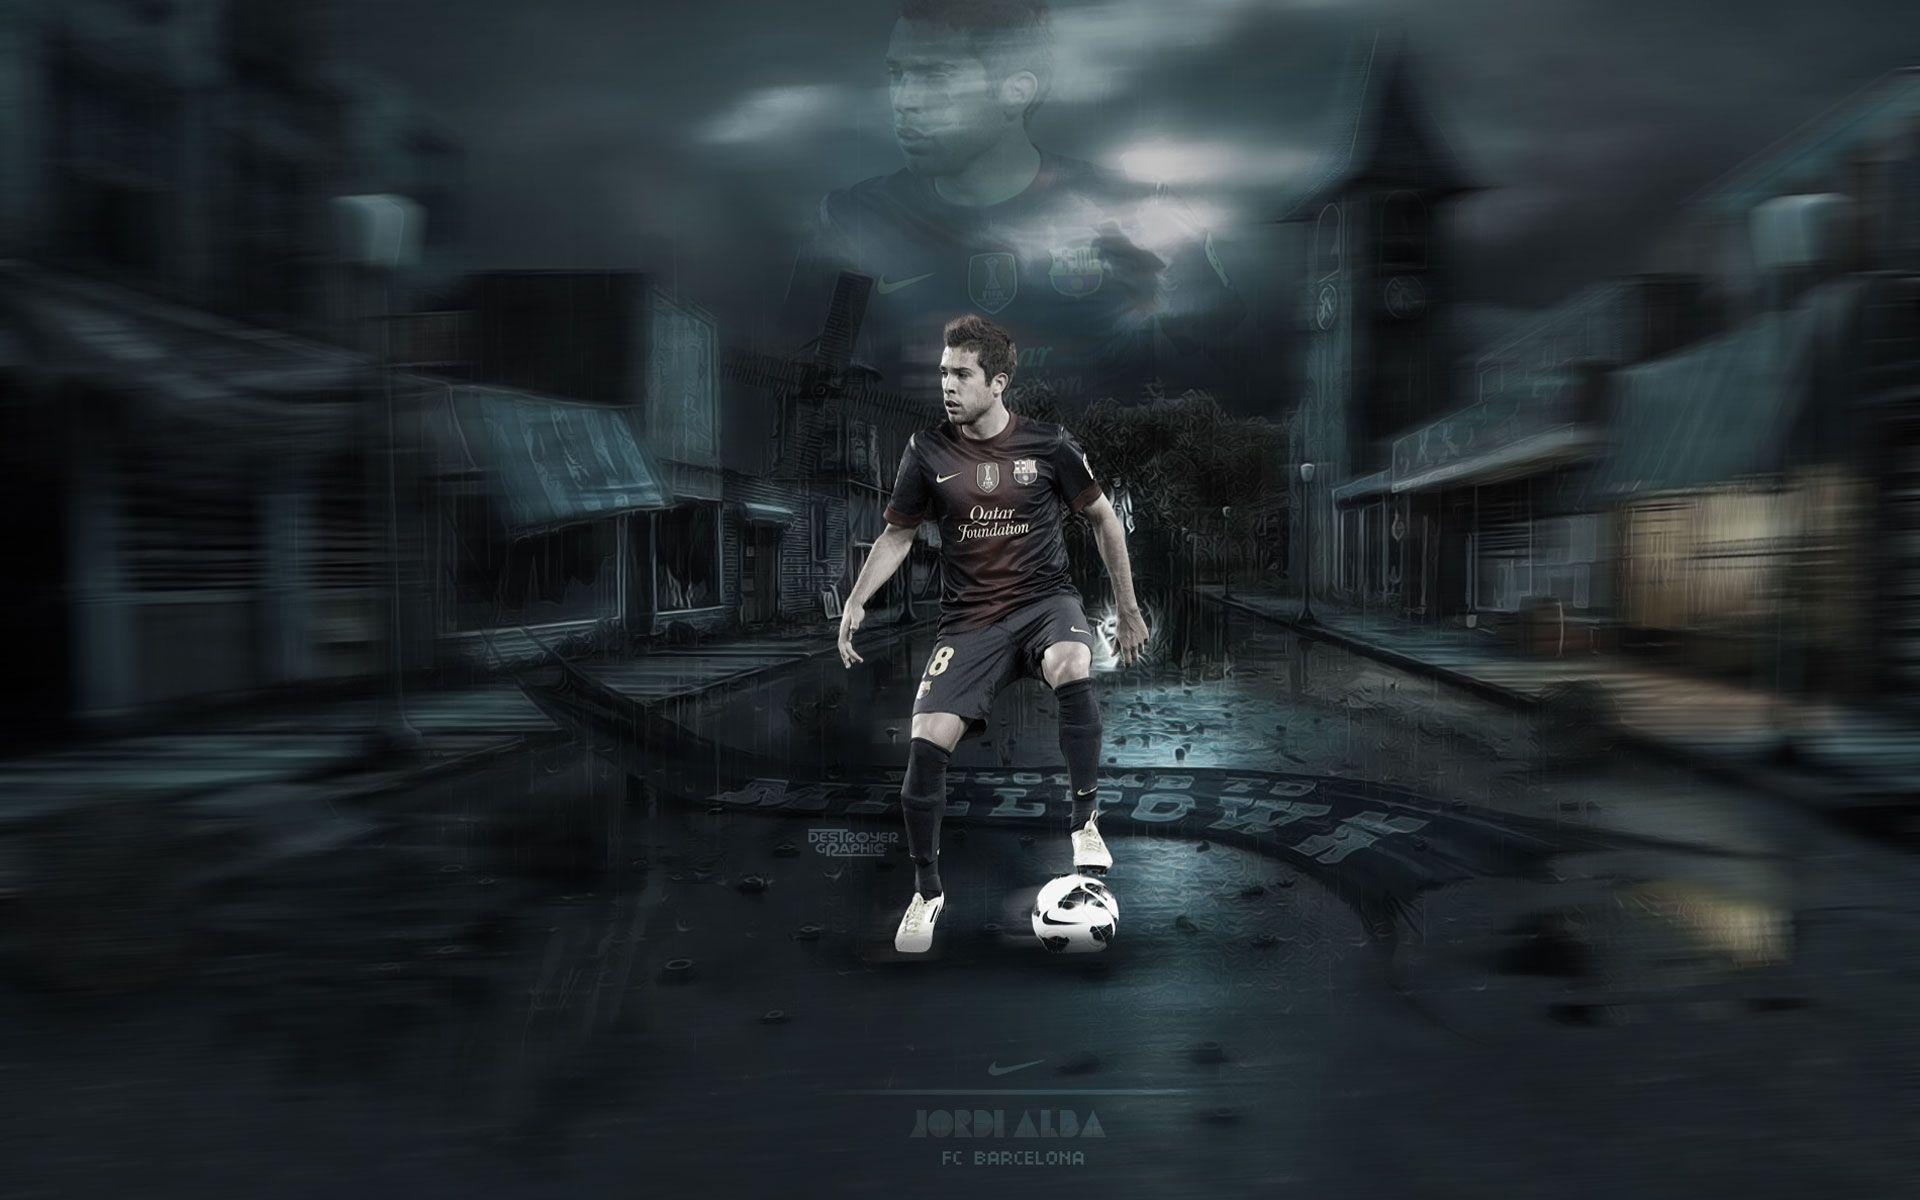 The player of Barcelona Jordi Alba in the dark streets wallpaper